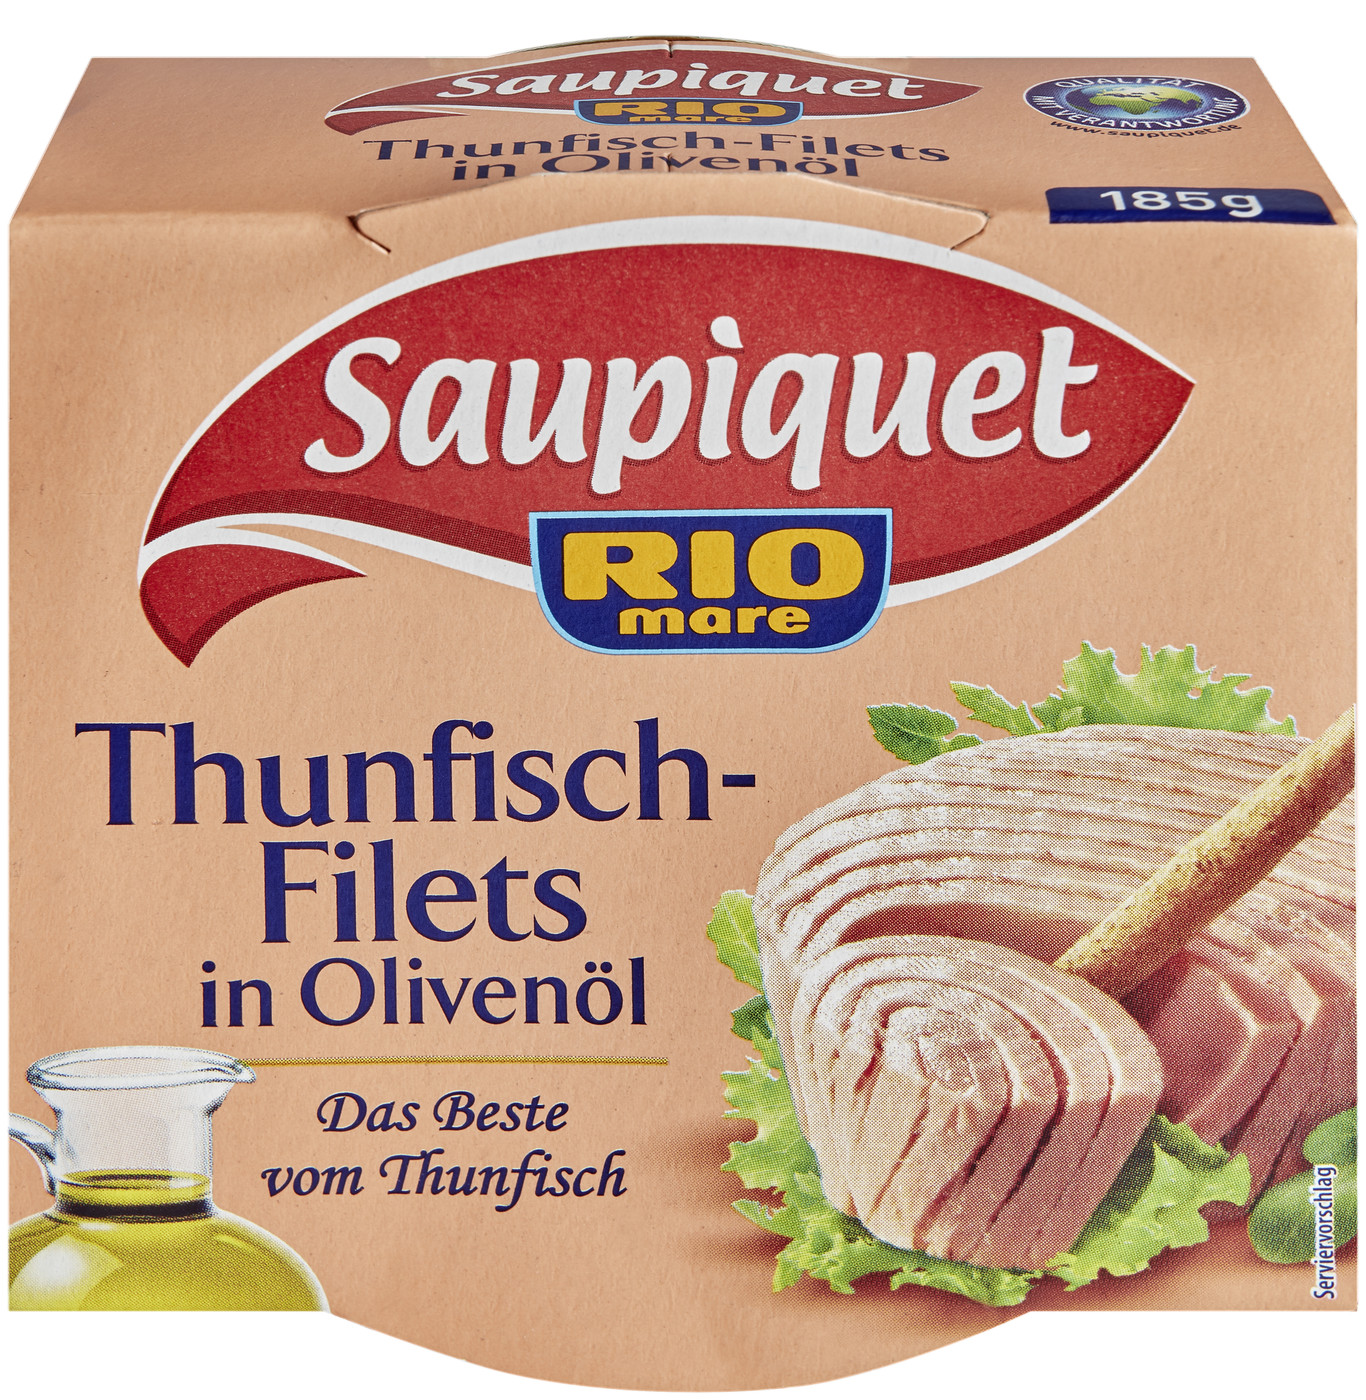 Saupiquet Thunfisch-Filets in Olivenöl 185g